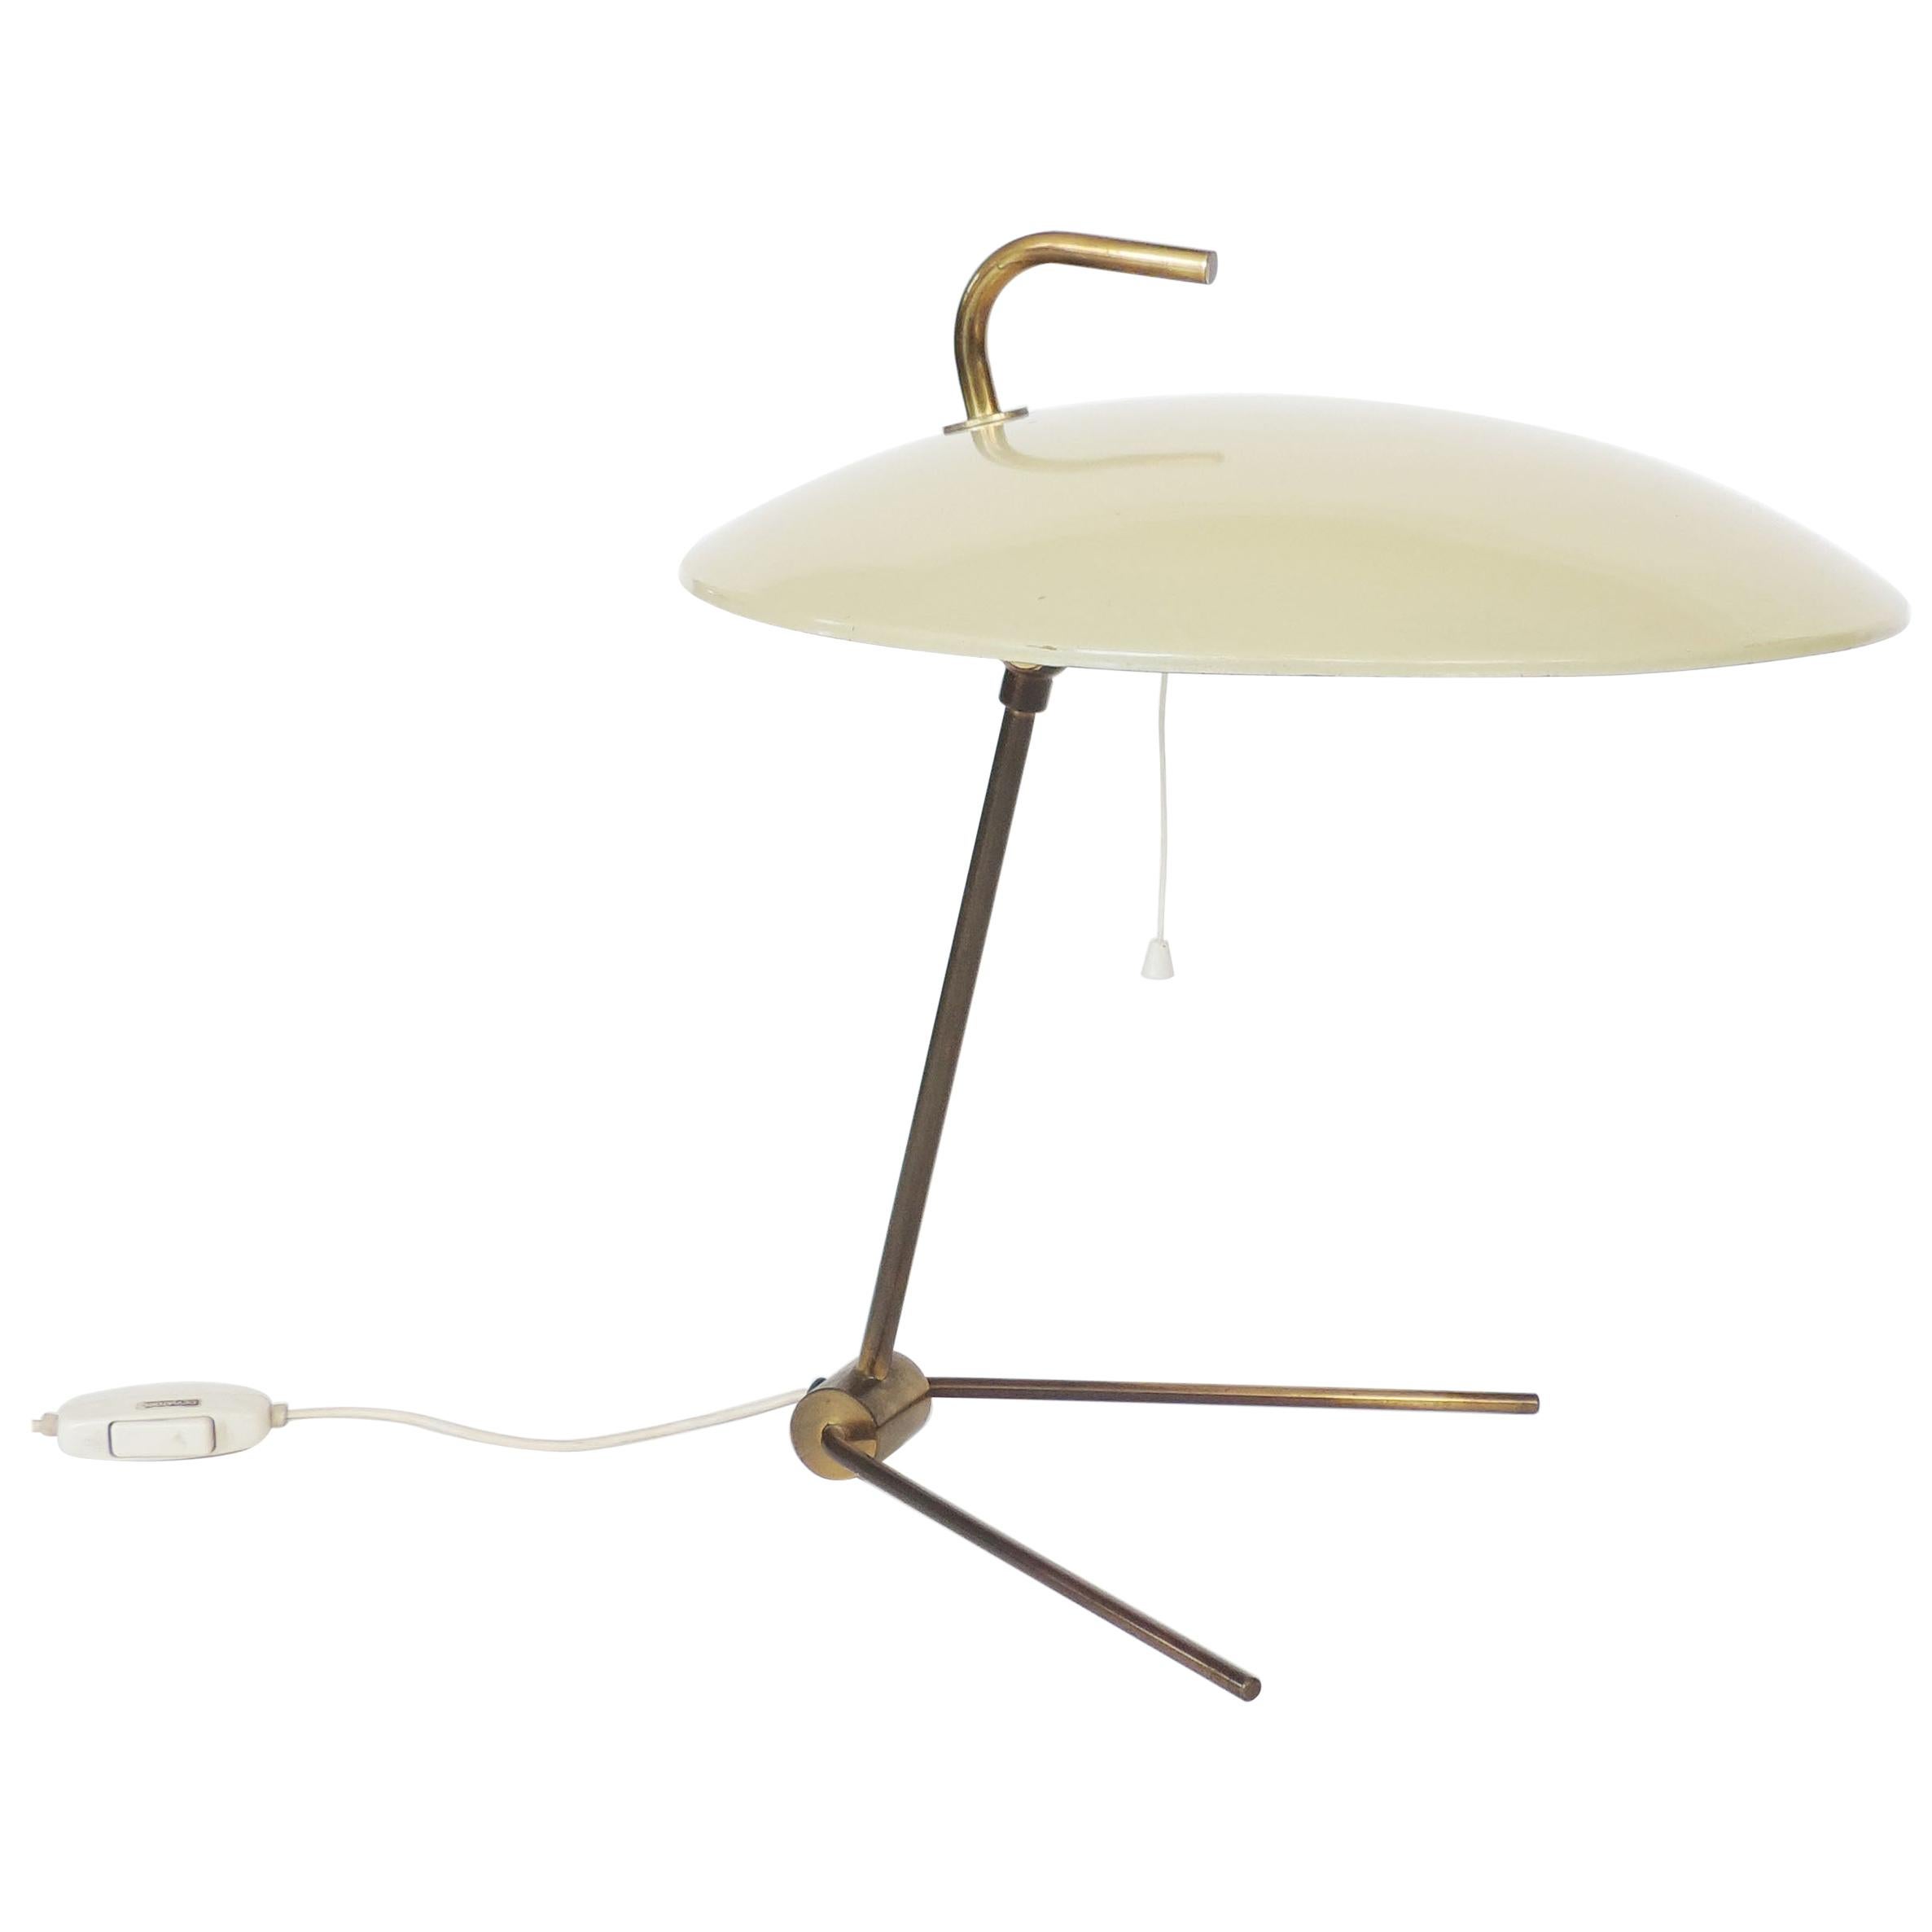 Nikolay Diulgheroff Art Deco Futurism Table Lamp, Italy, 1938